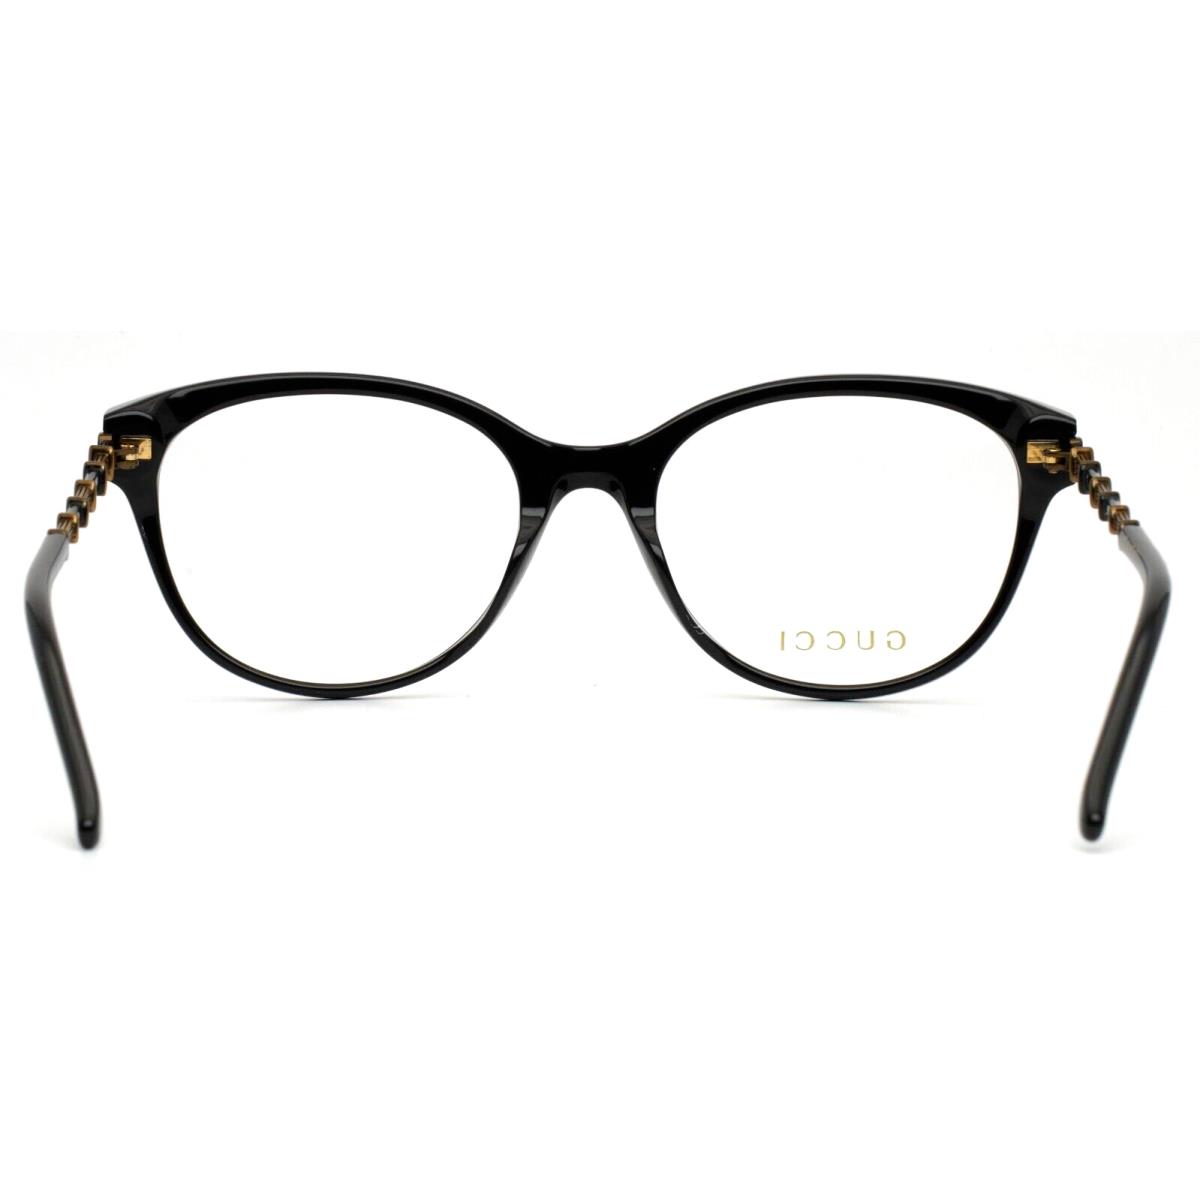 Gucci eyeglasses  - Black Frame 6